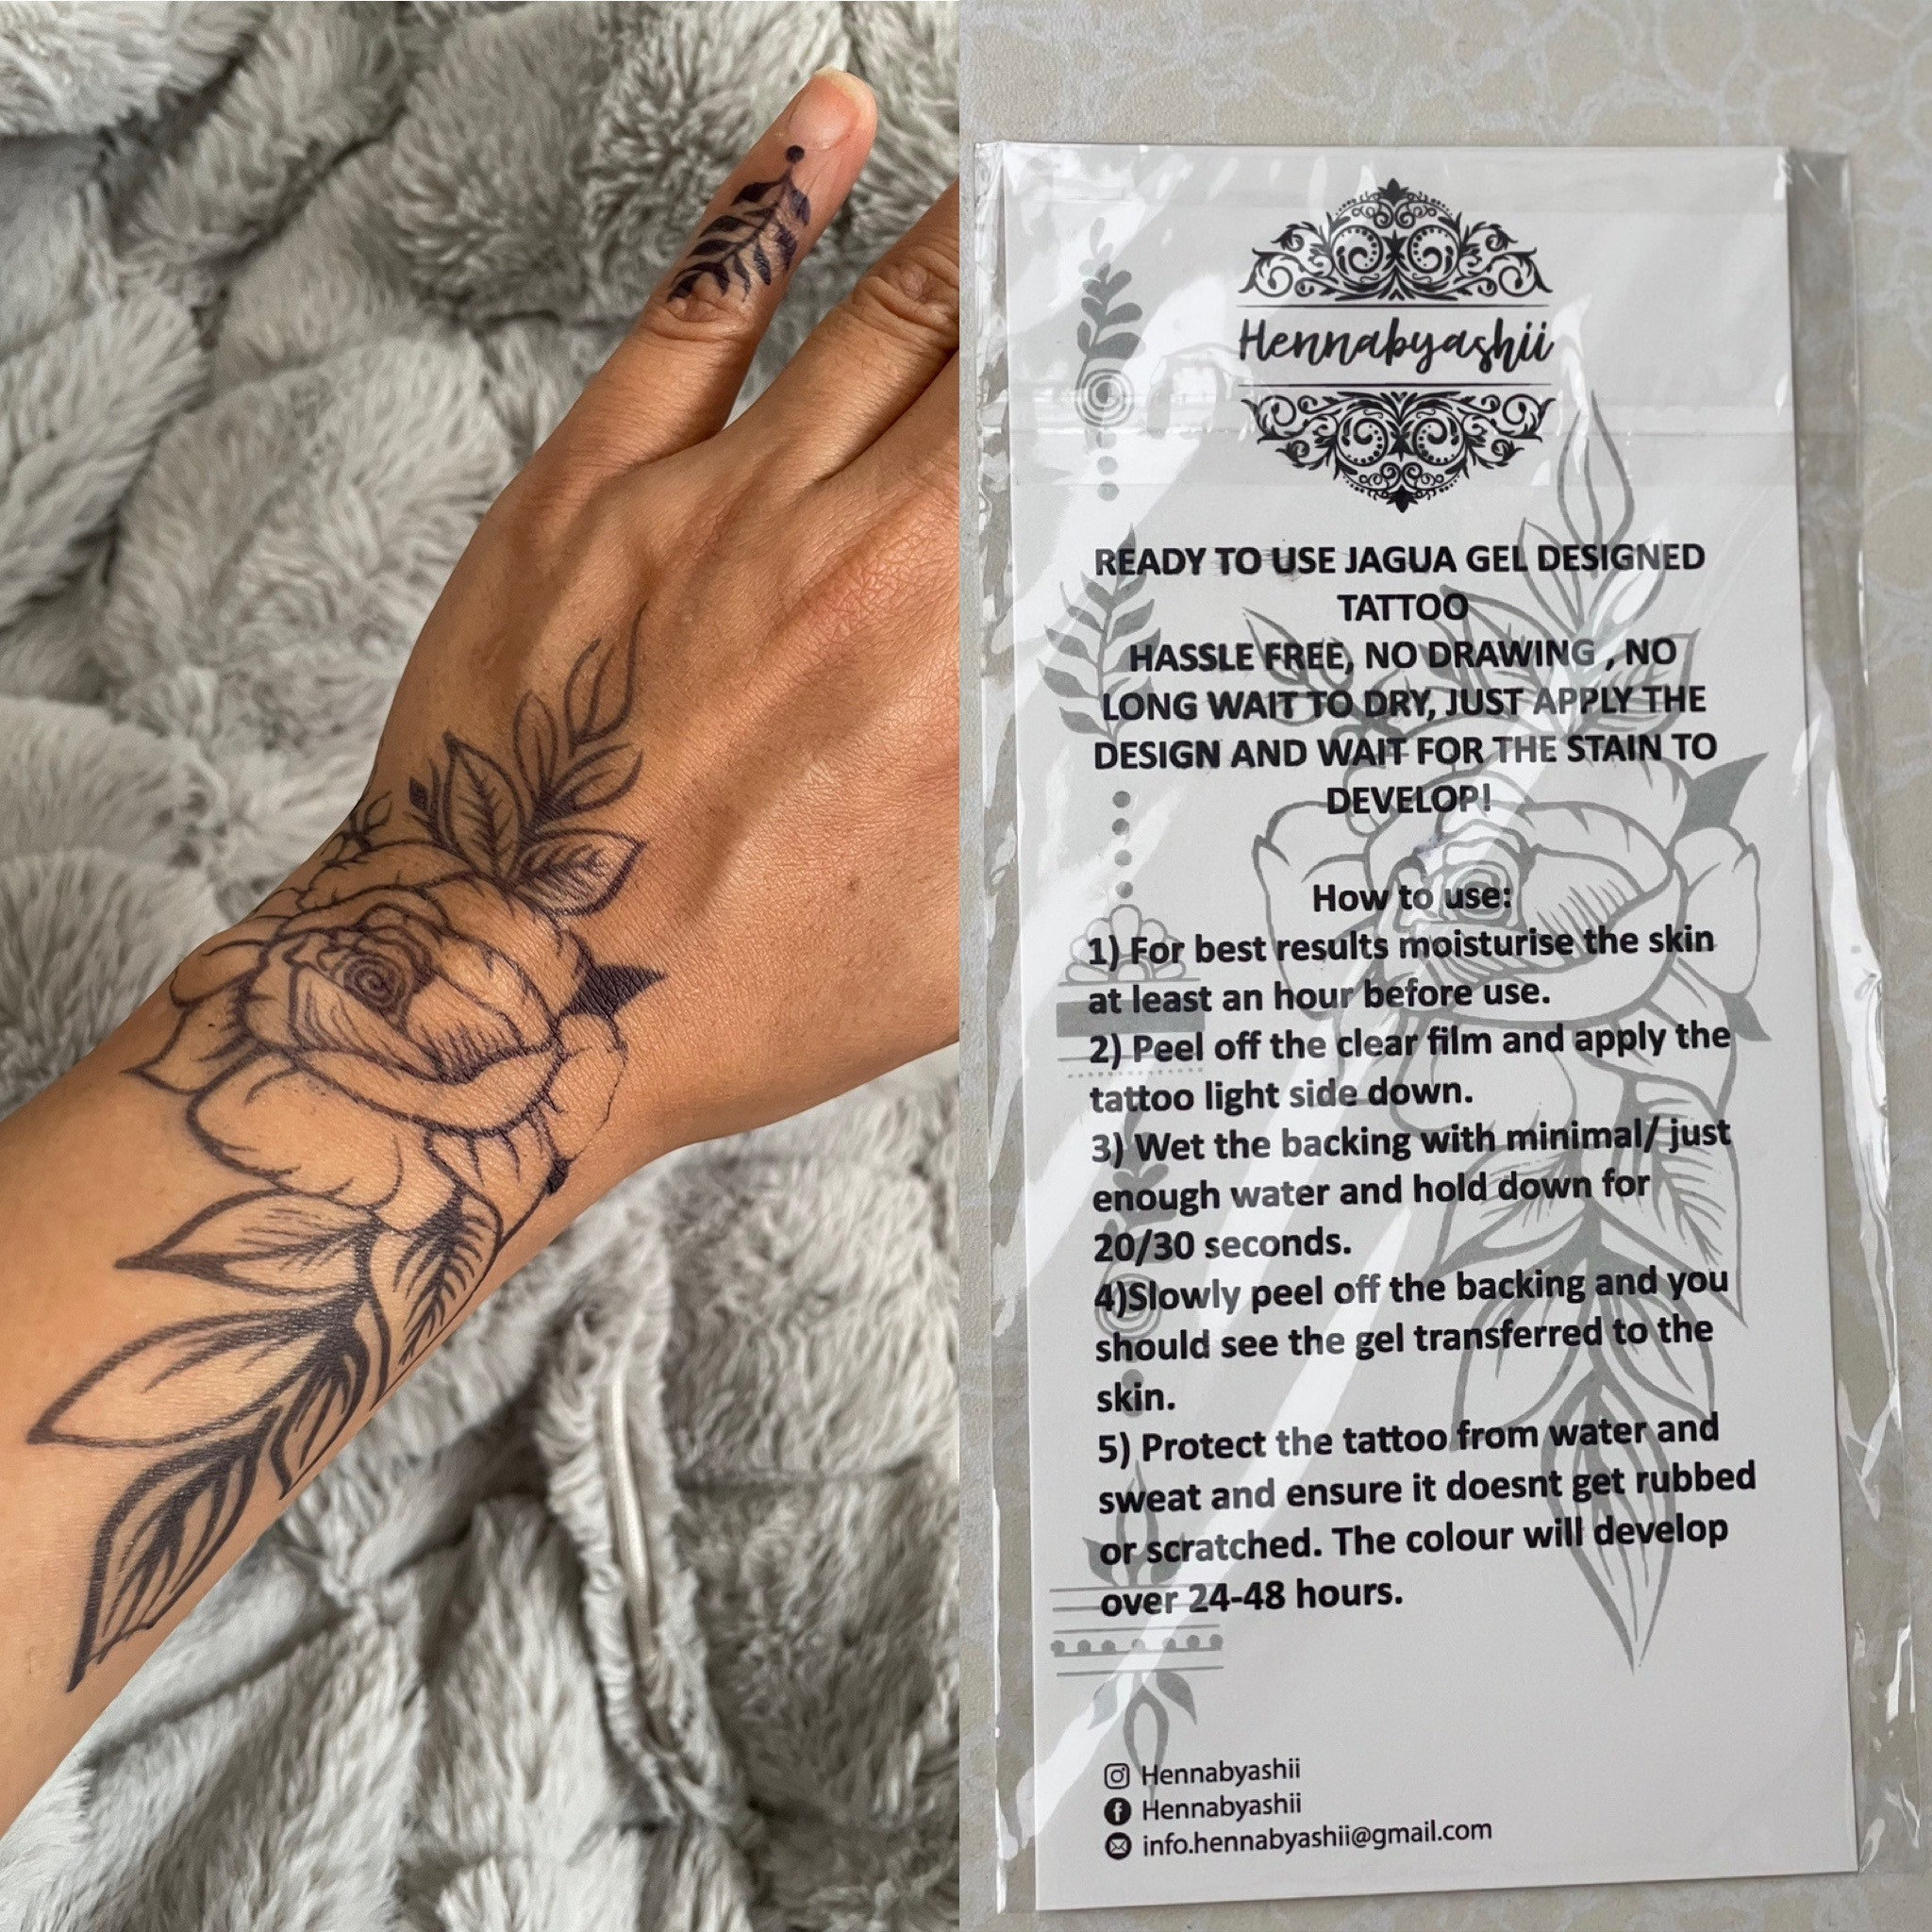 White Henna Stickers Mehndi Flower Hand Womens Tattoo Kit Wedding Shadi  Lace Art 